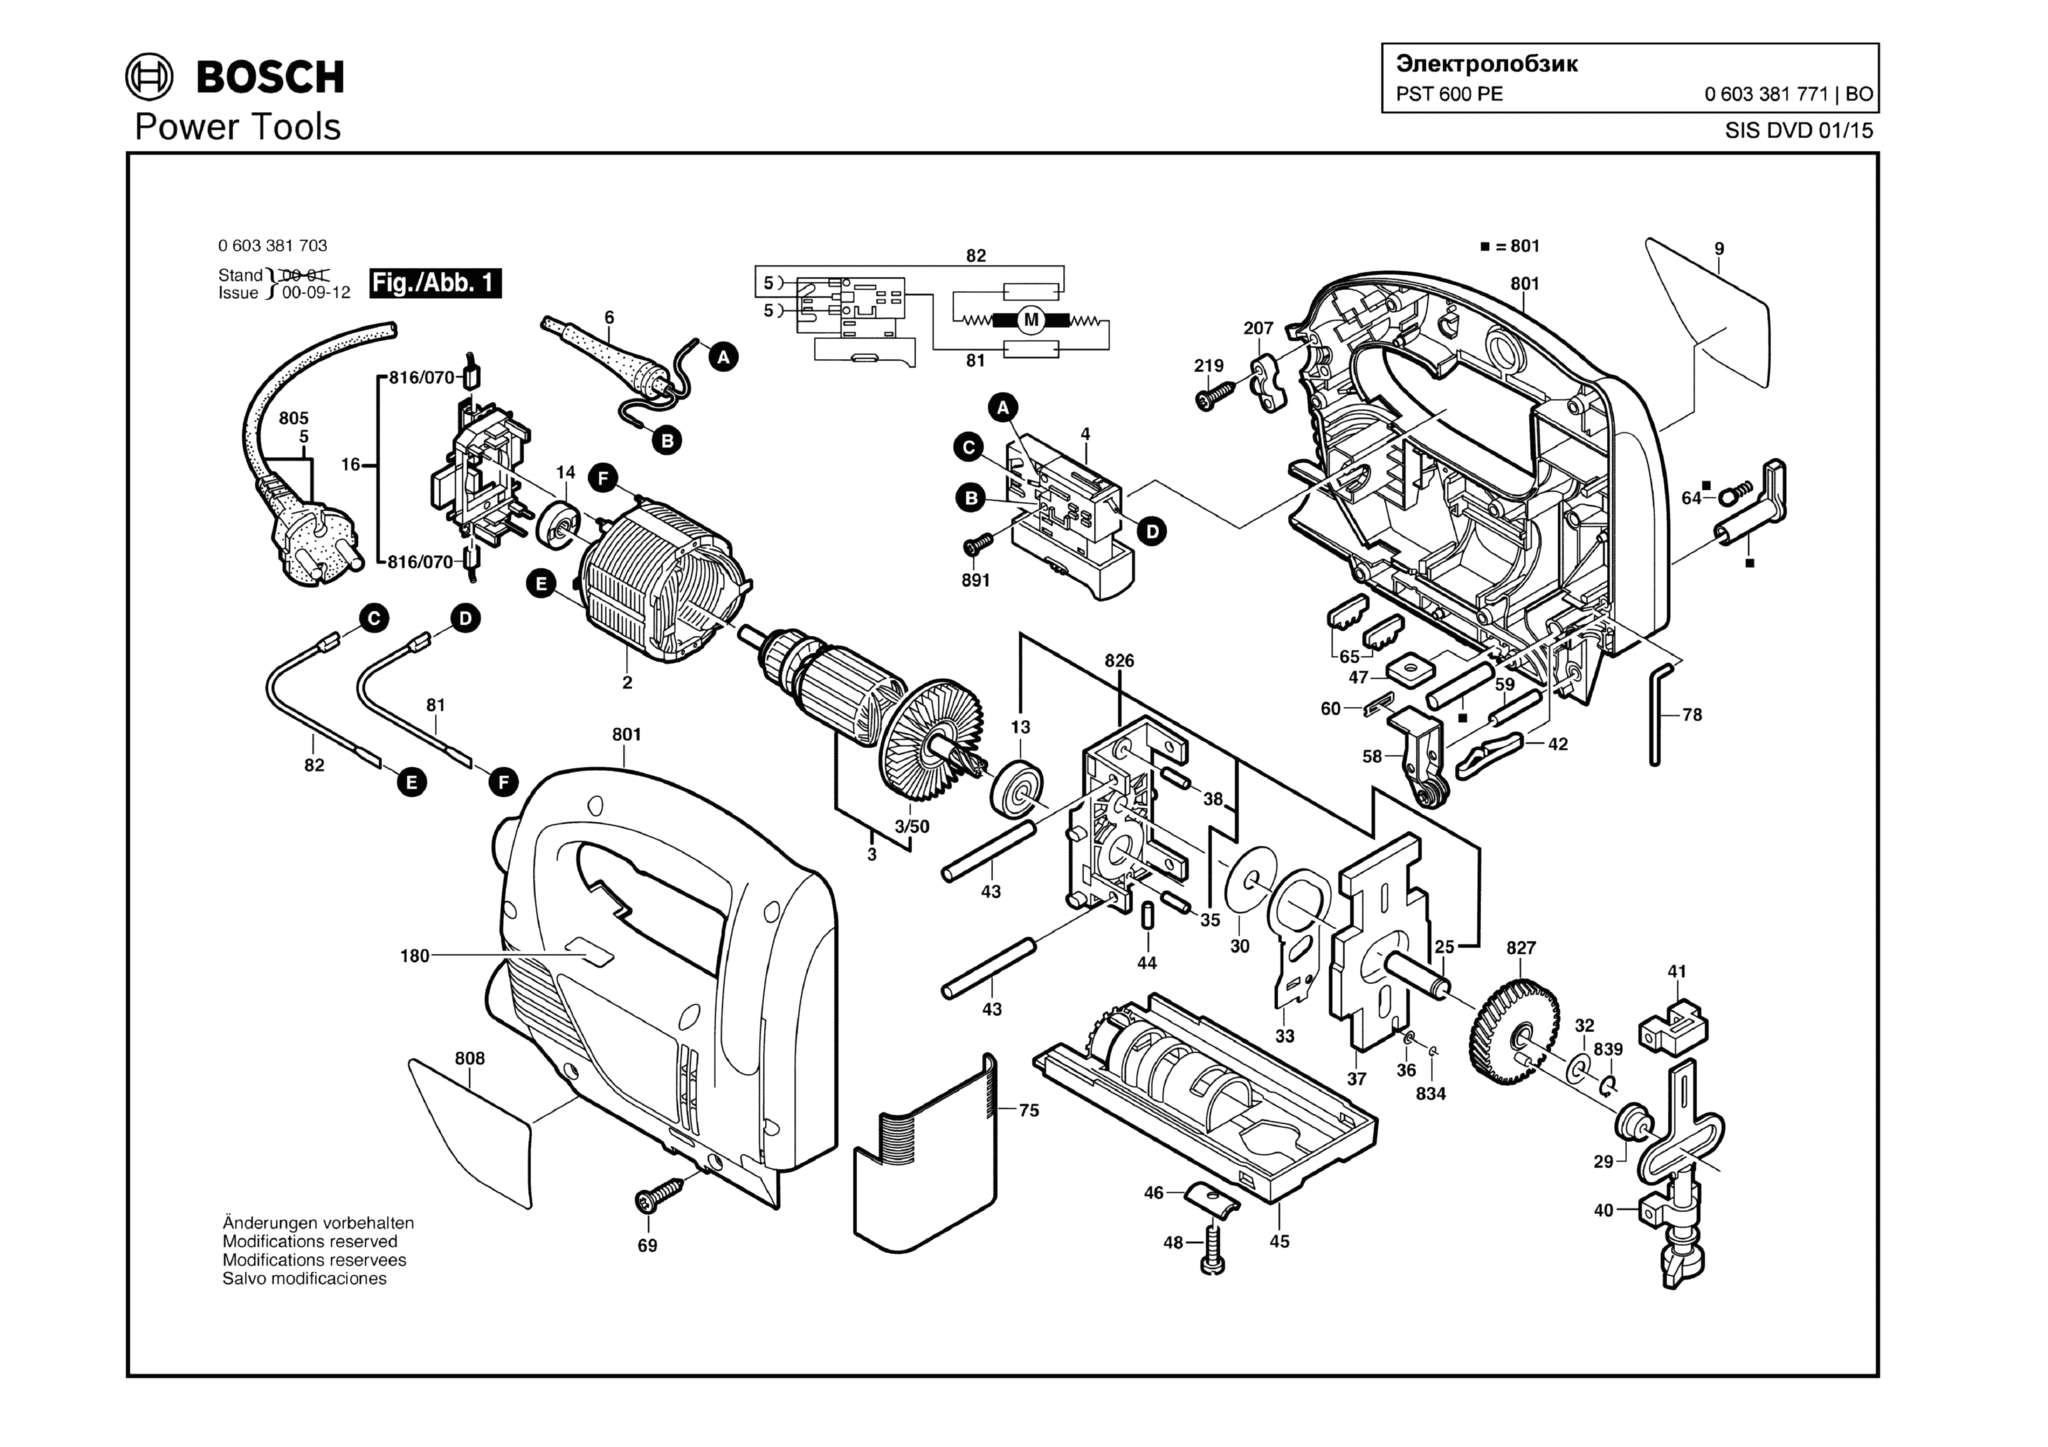 Запчасти, схема и деталировка Bosch PST 600 PE (ТИП 0603381771)